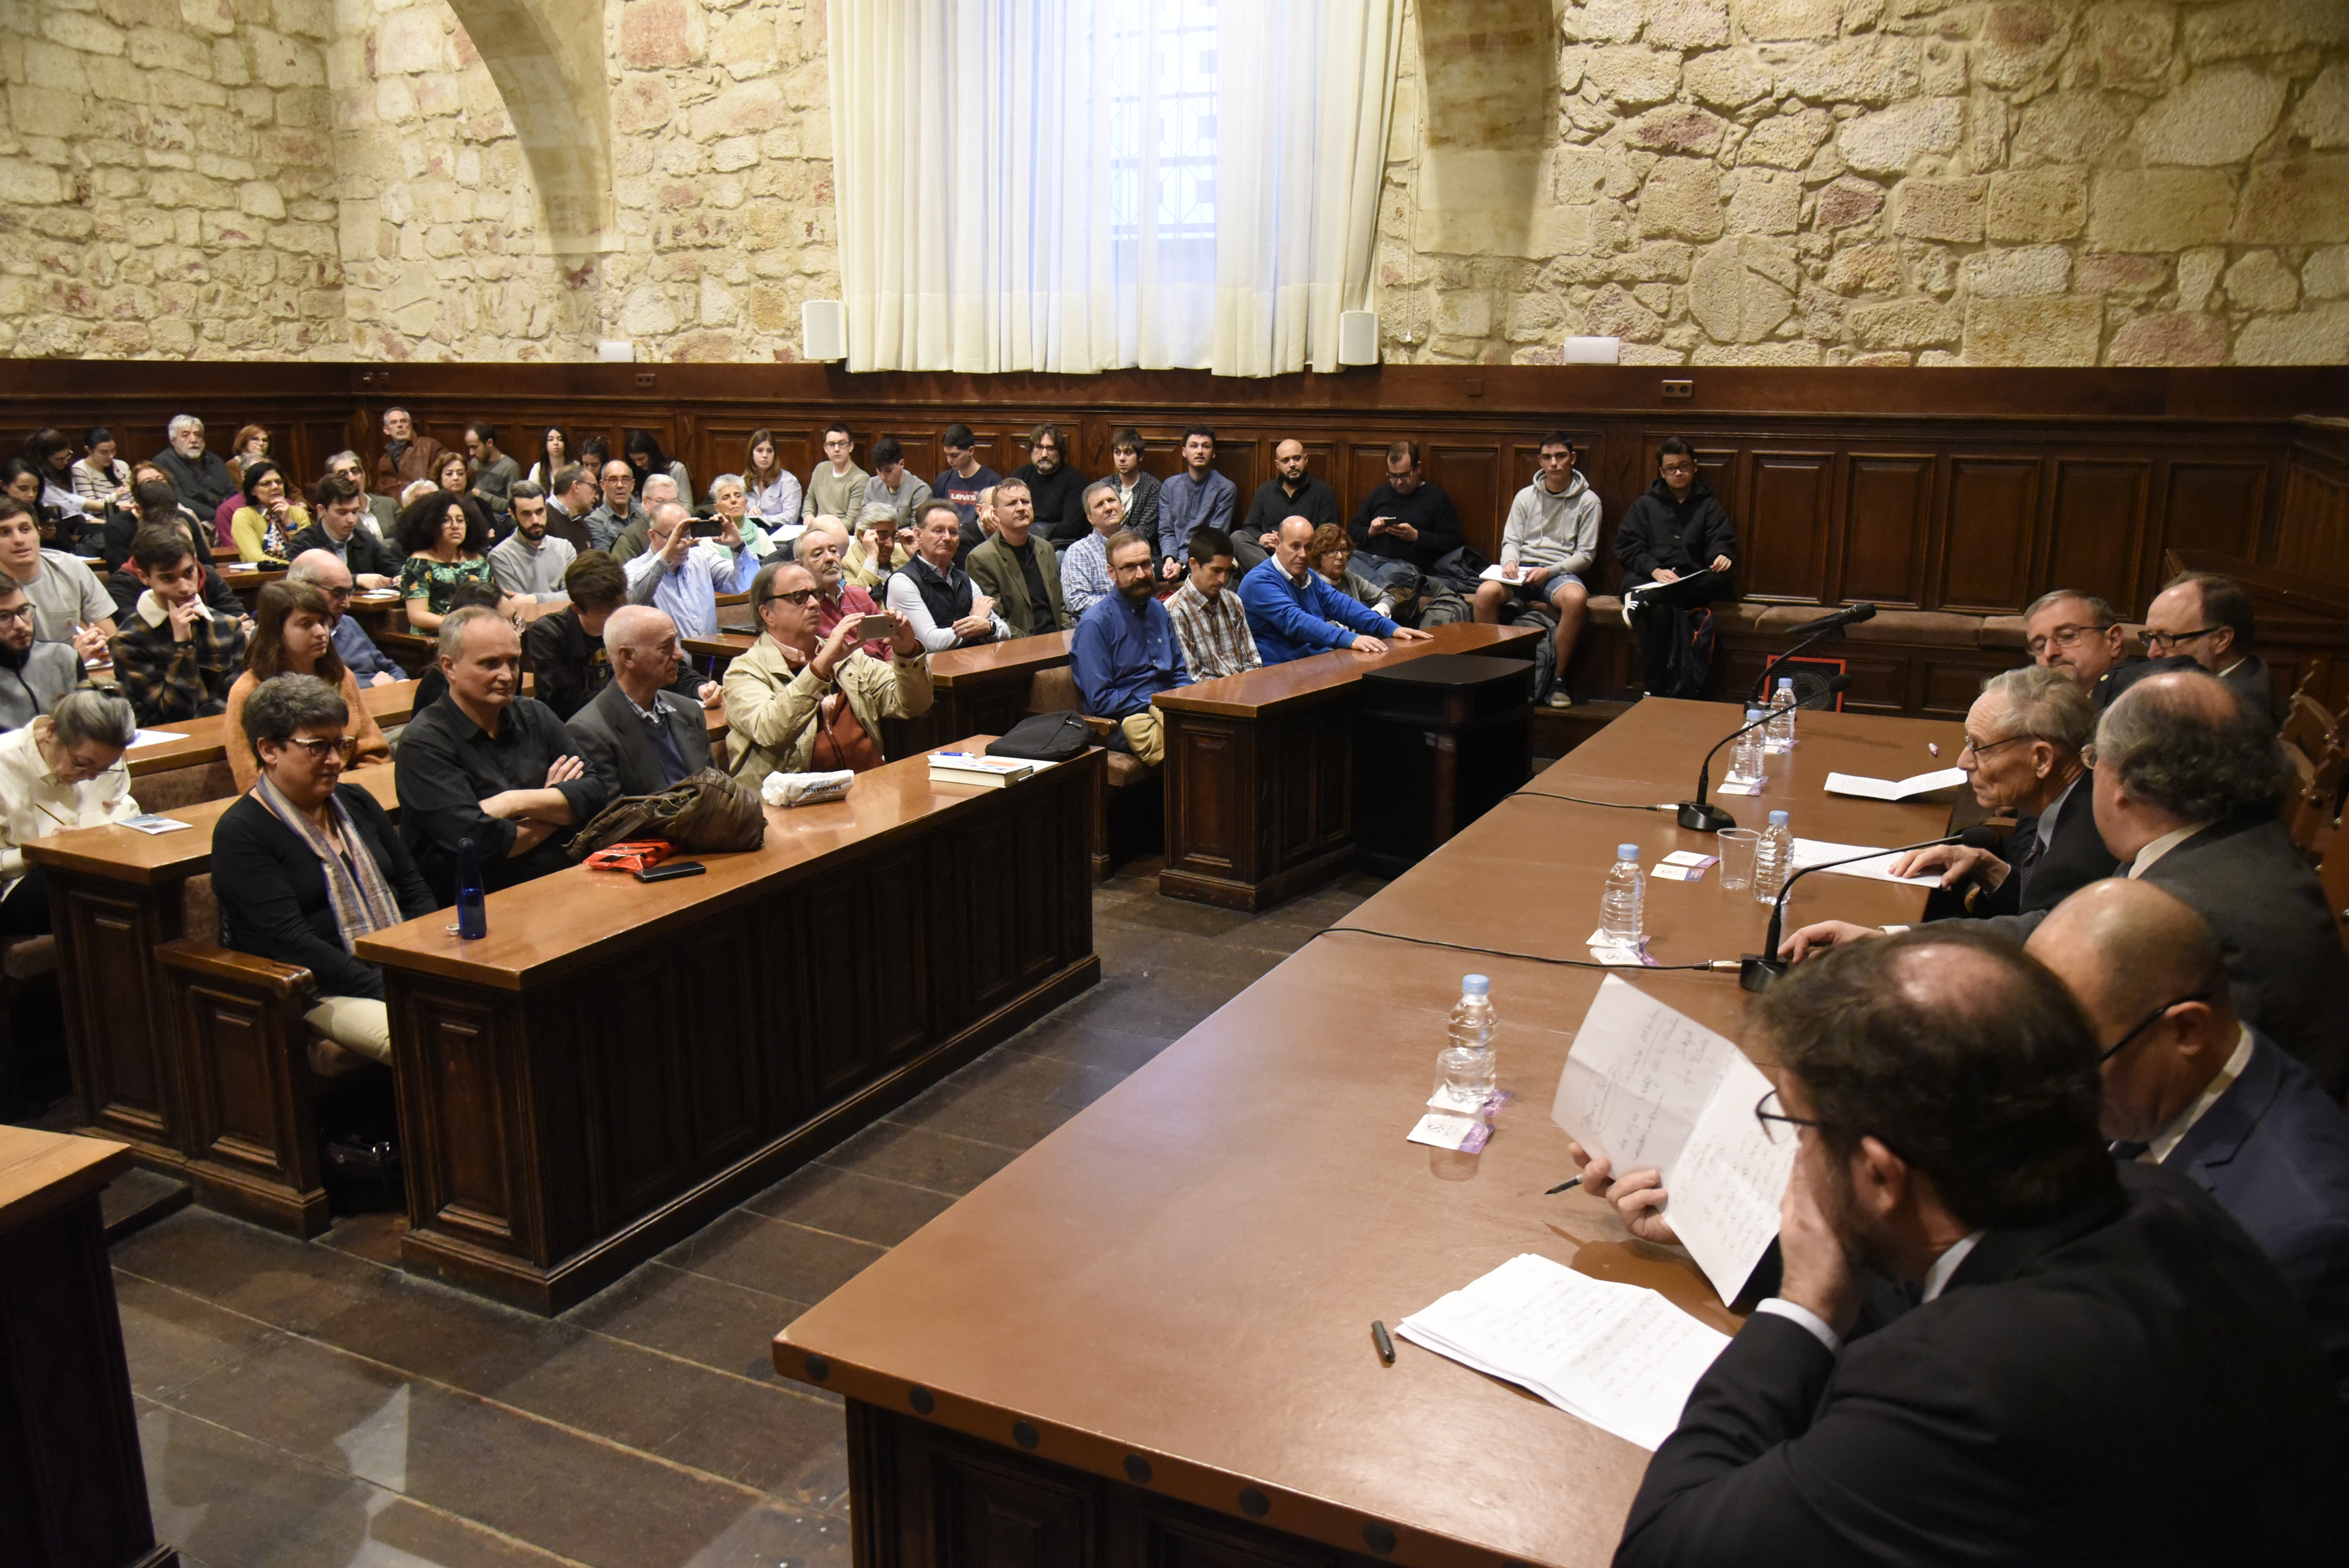 El aclamado historiador británico John Elliot participa en el ciclo ‘Diálogos sobre Cataluña’ con una conferencia sobre las similitudes entre Escocia y Cataluña